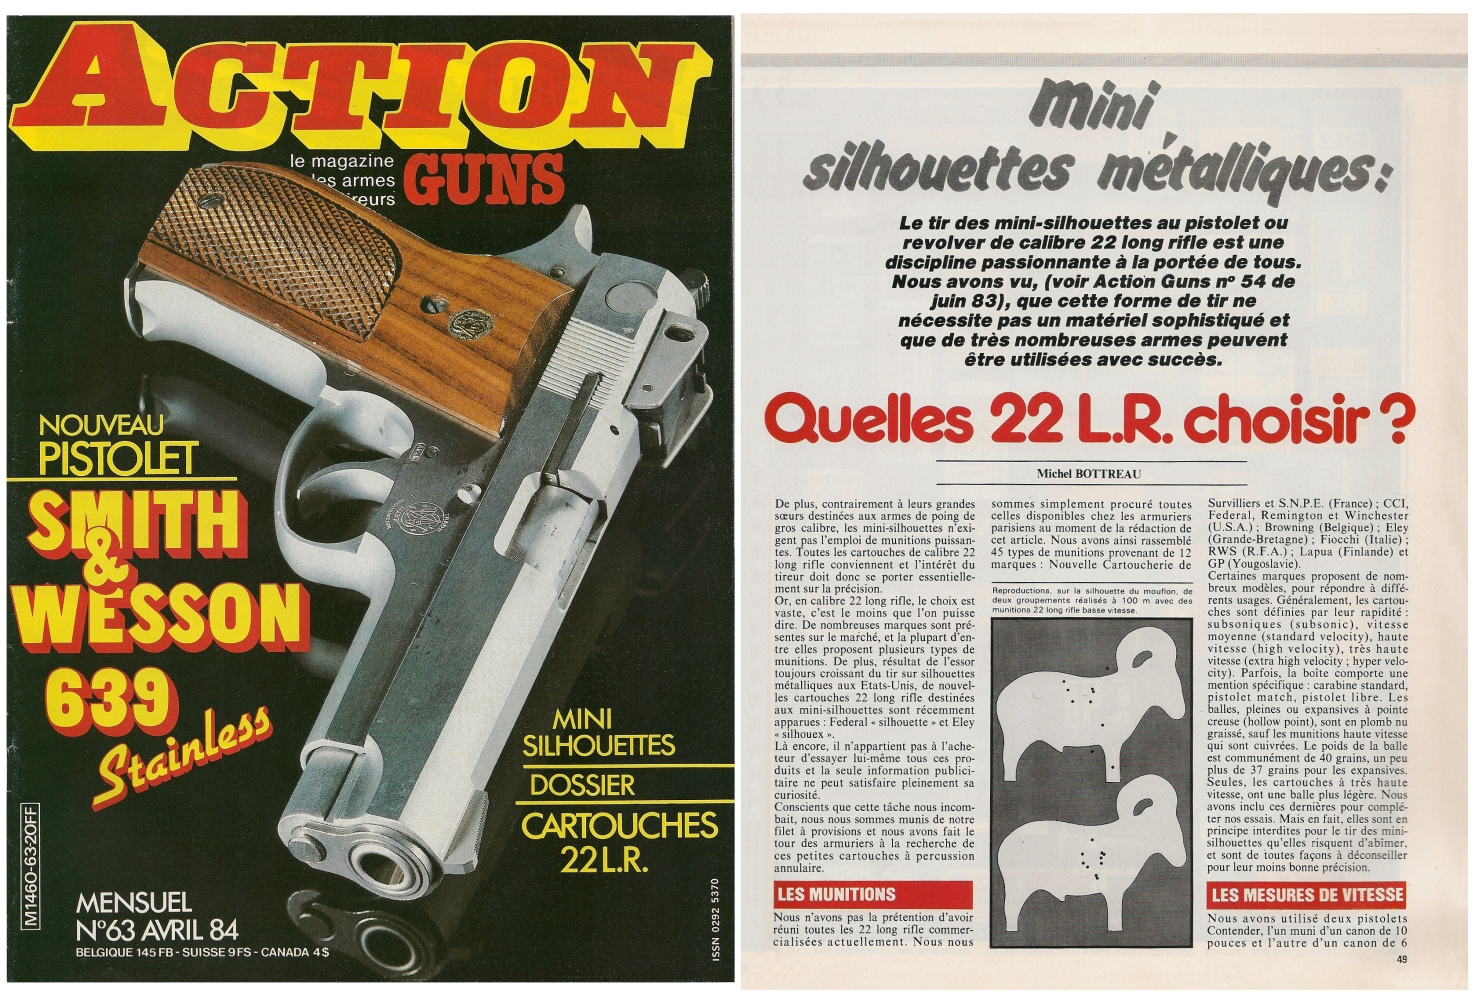 Le banc d’essai à 100 mètres des cartouches de calibre .22 Long Rifle a été publié sur 7 pages dans le magazine Action Guns n°63 (avril 1984). 